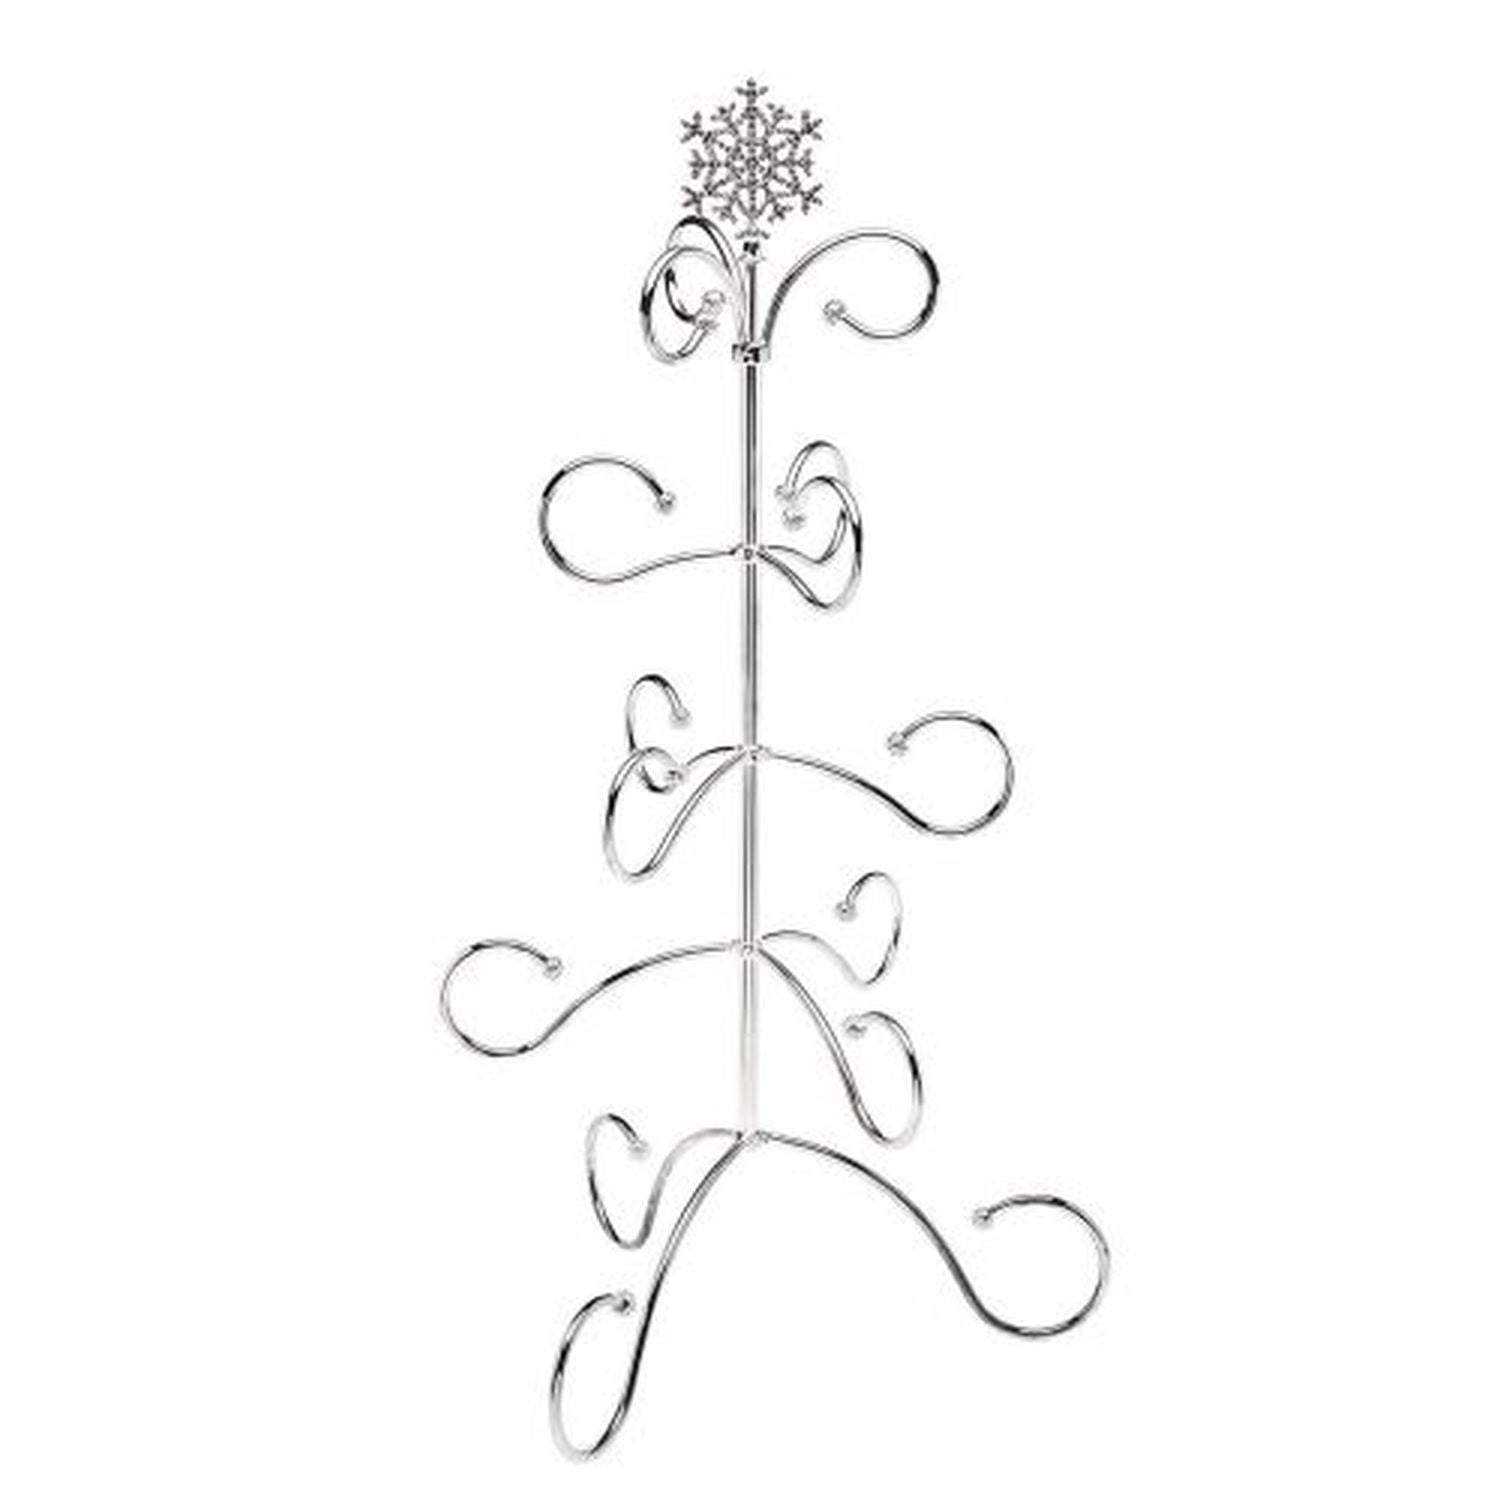 Godinger Ornament Tree Snowflake/Stons by Godinger